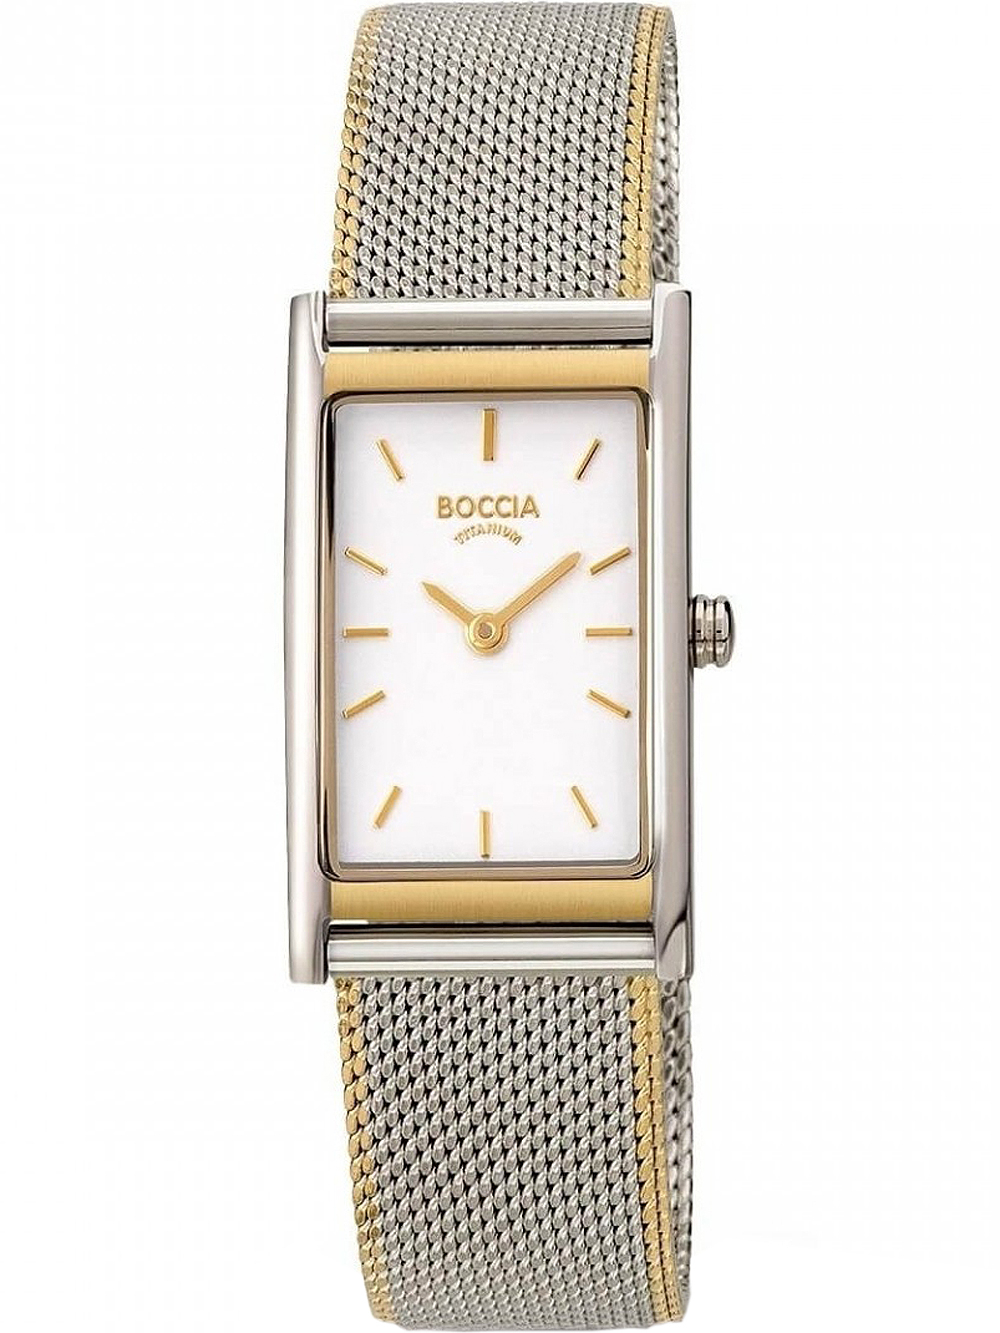 Dámské hodinky Boccia 3304-02 ladies watch titanium 20mm 5ATM